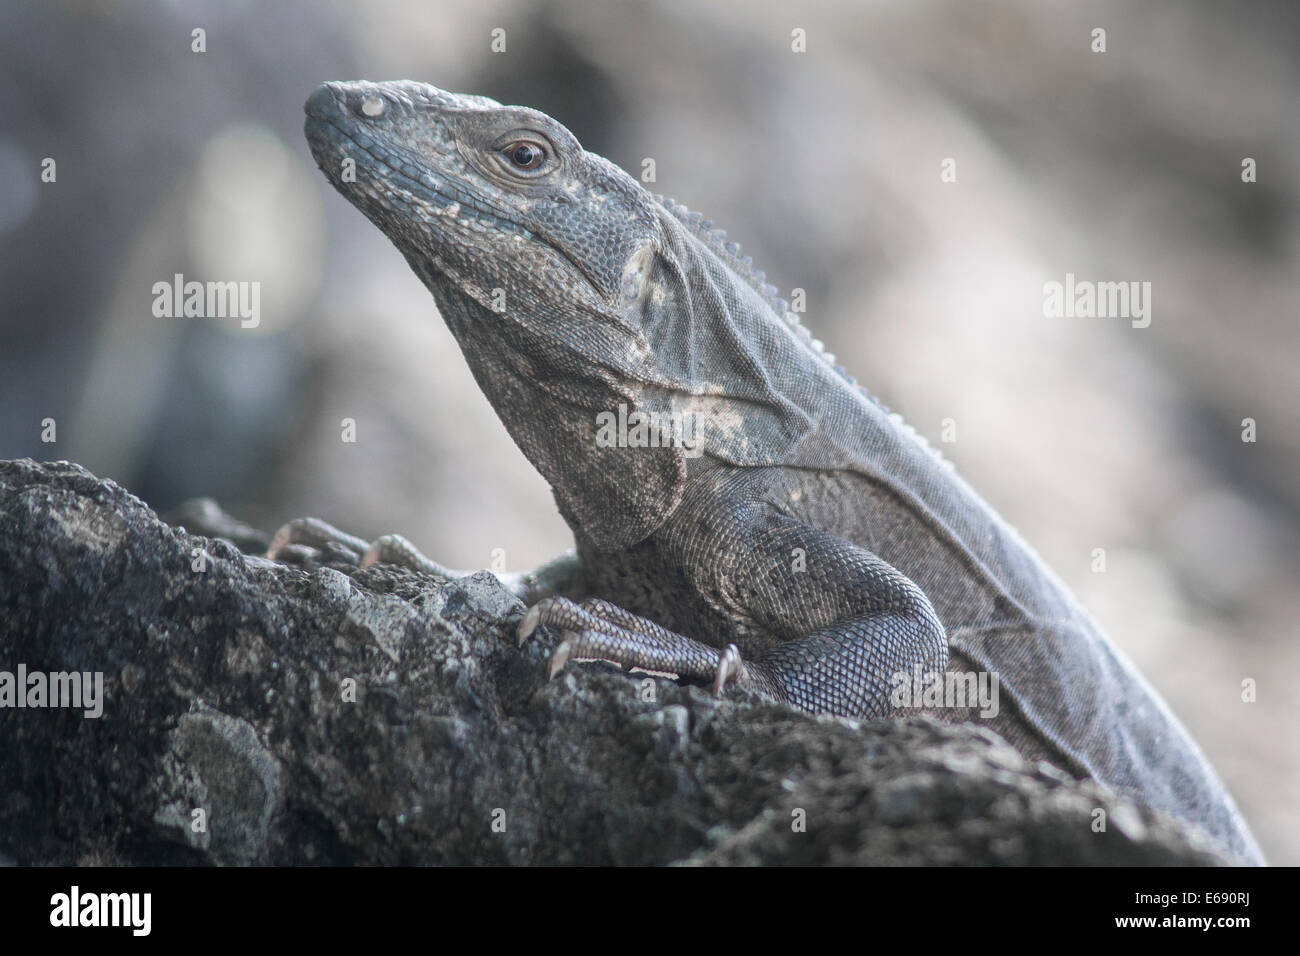 Black spiny-tailed iguana, Ctenosaura similis. Stock Photo